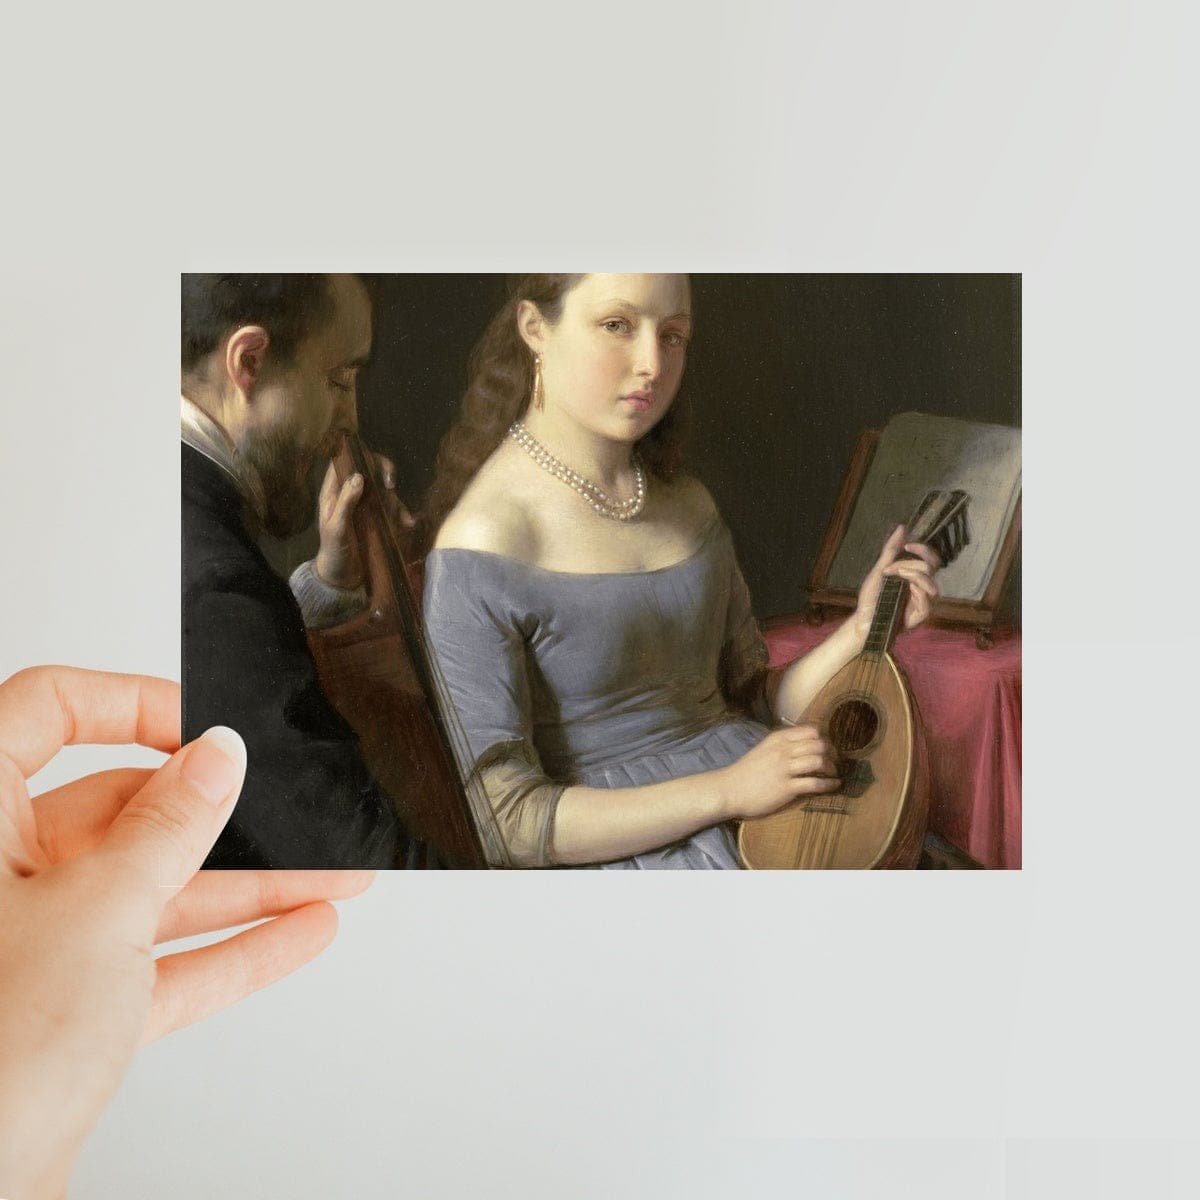 The Duet, Charles van Beveren, 1830 - 1850 Classic Postcard